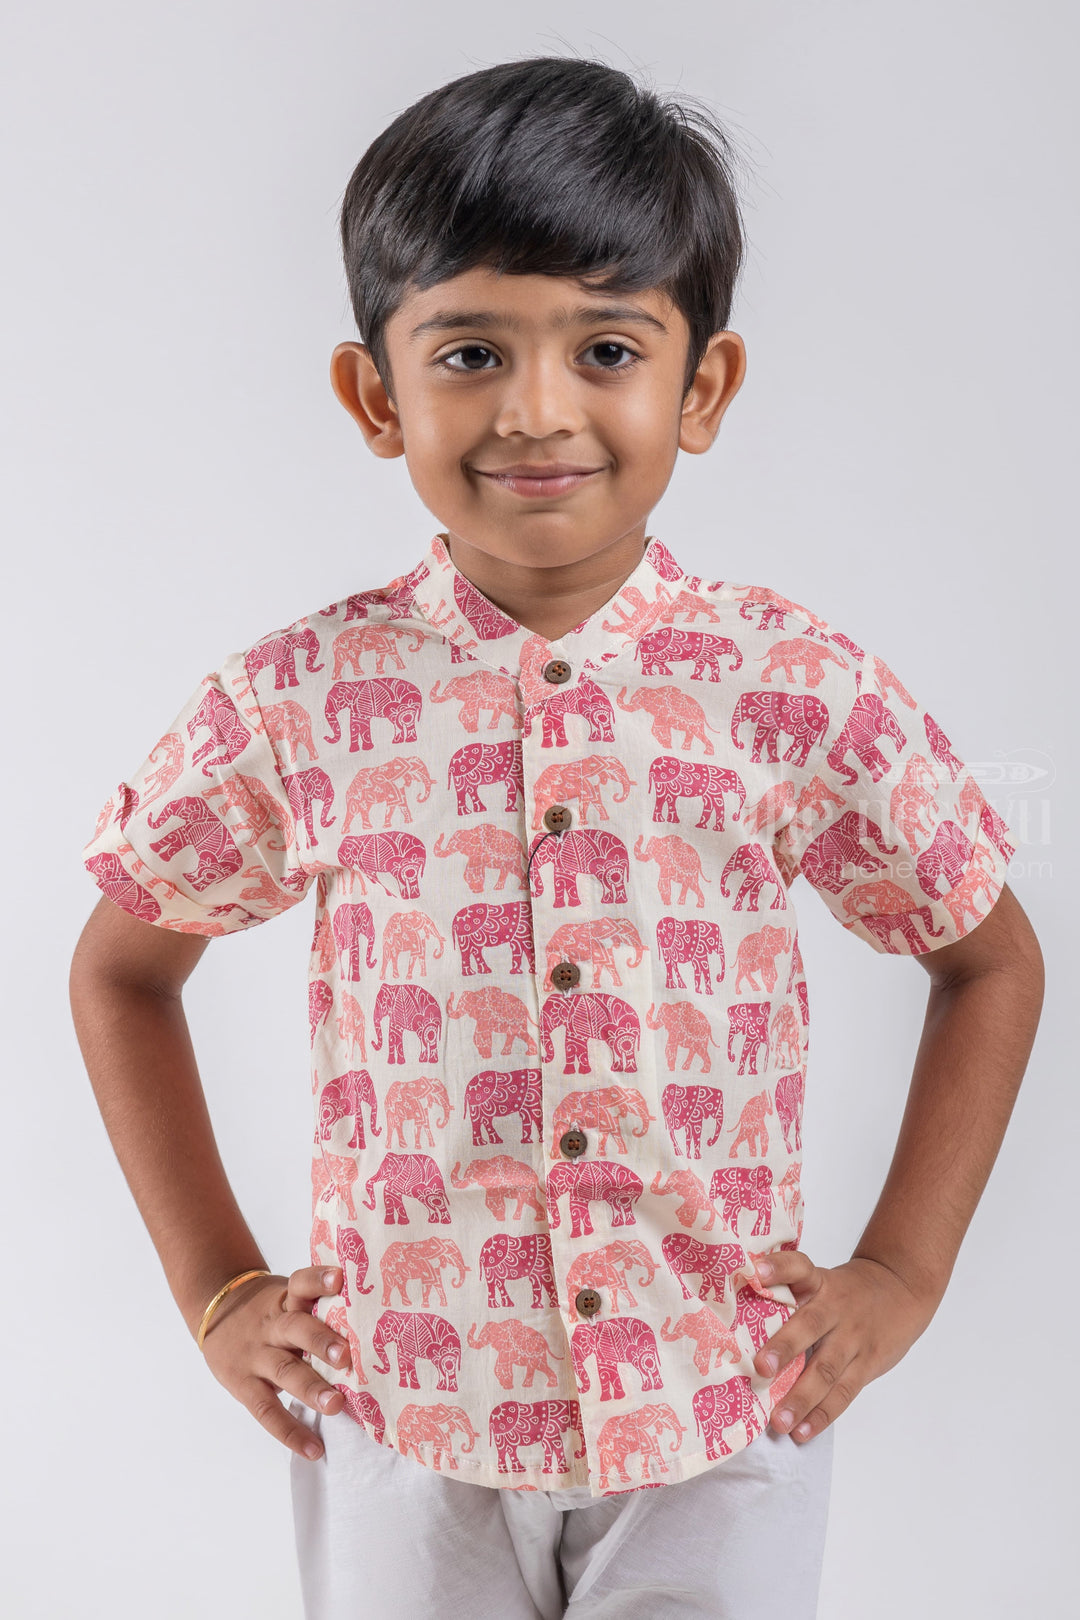 The Nesavu Boys Cotton Shirt Nesavu Fancy Elephant Design Printed Half White Cotton Shirt for Boys psr silks Nesavu 14 (6M) / Half White / Cotton BS040D